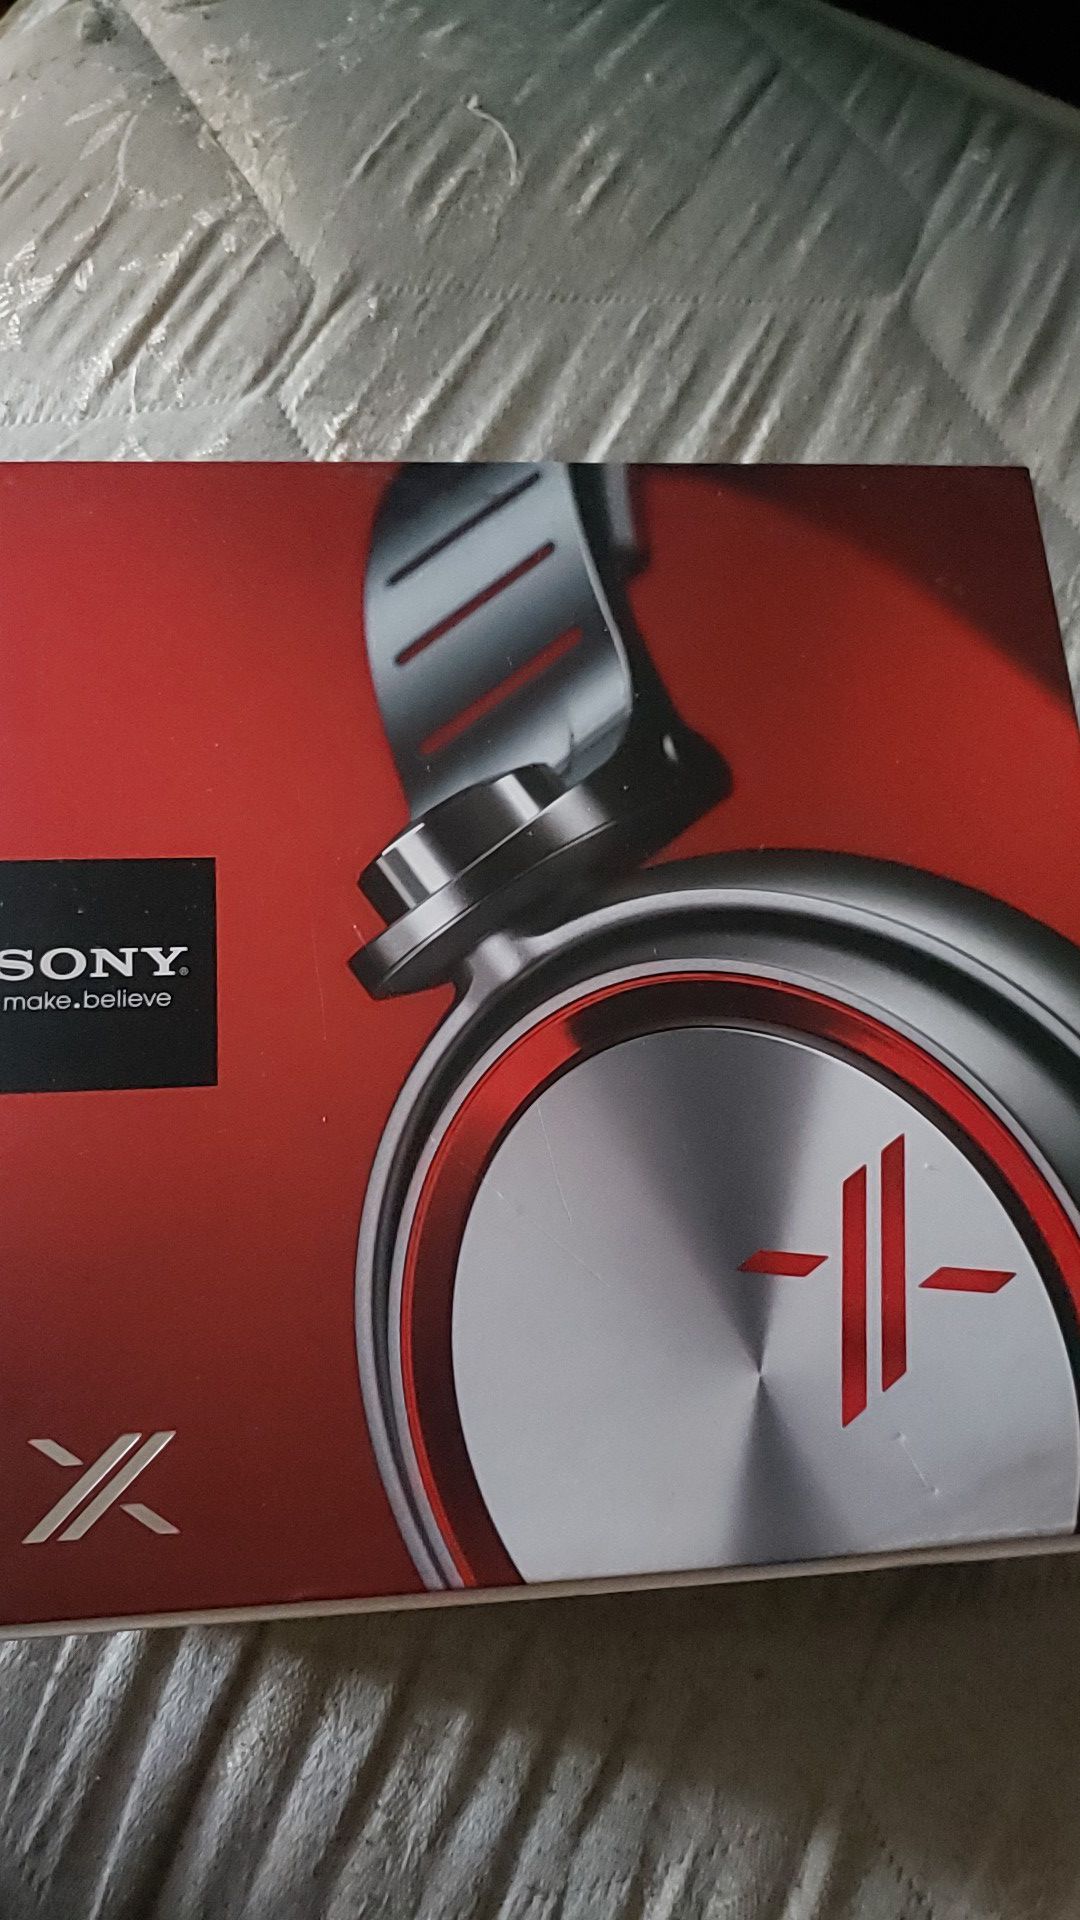 Sony X headphones